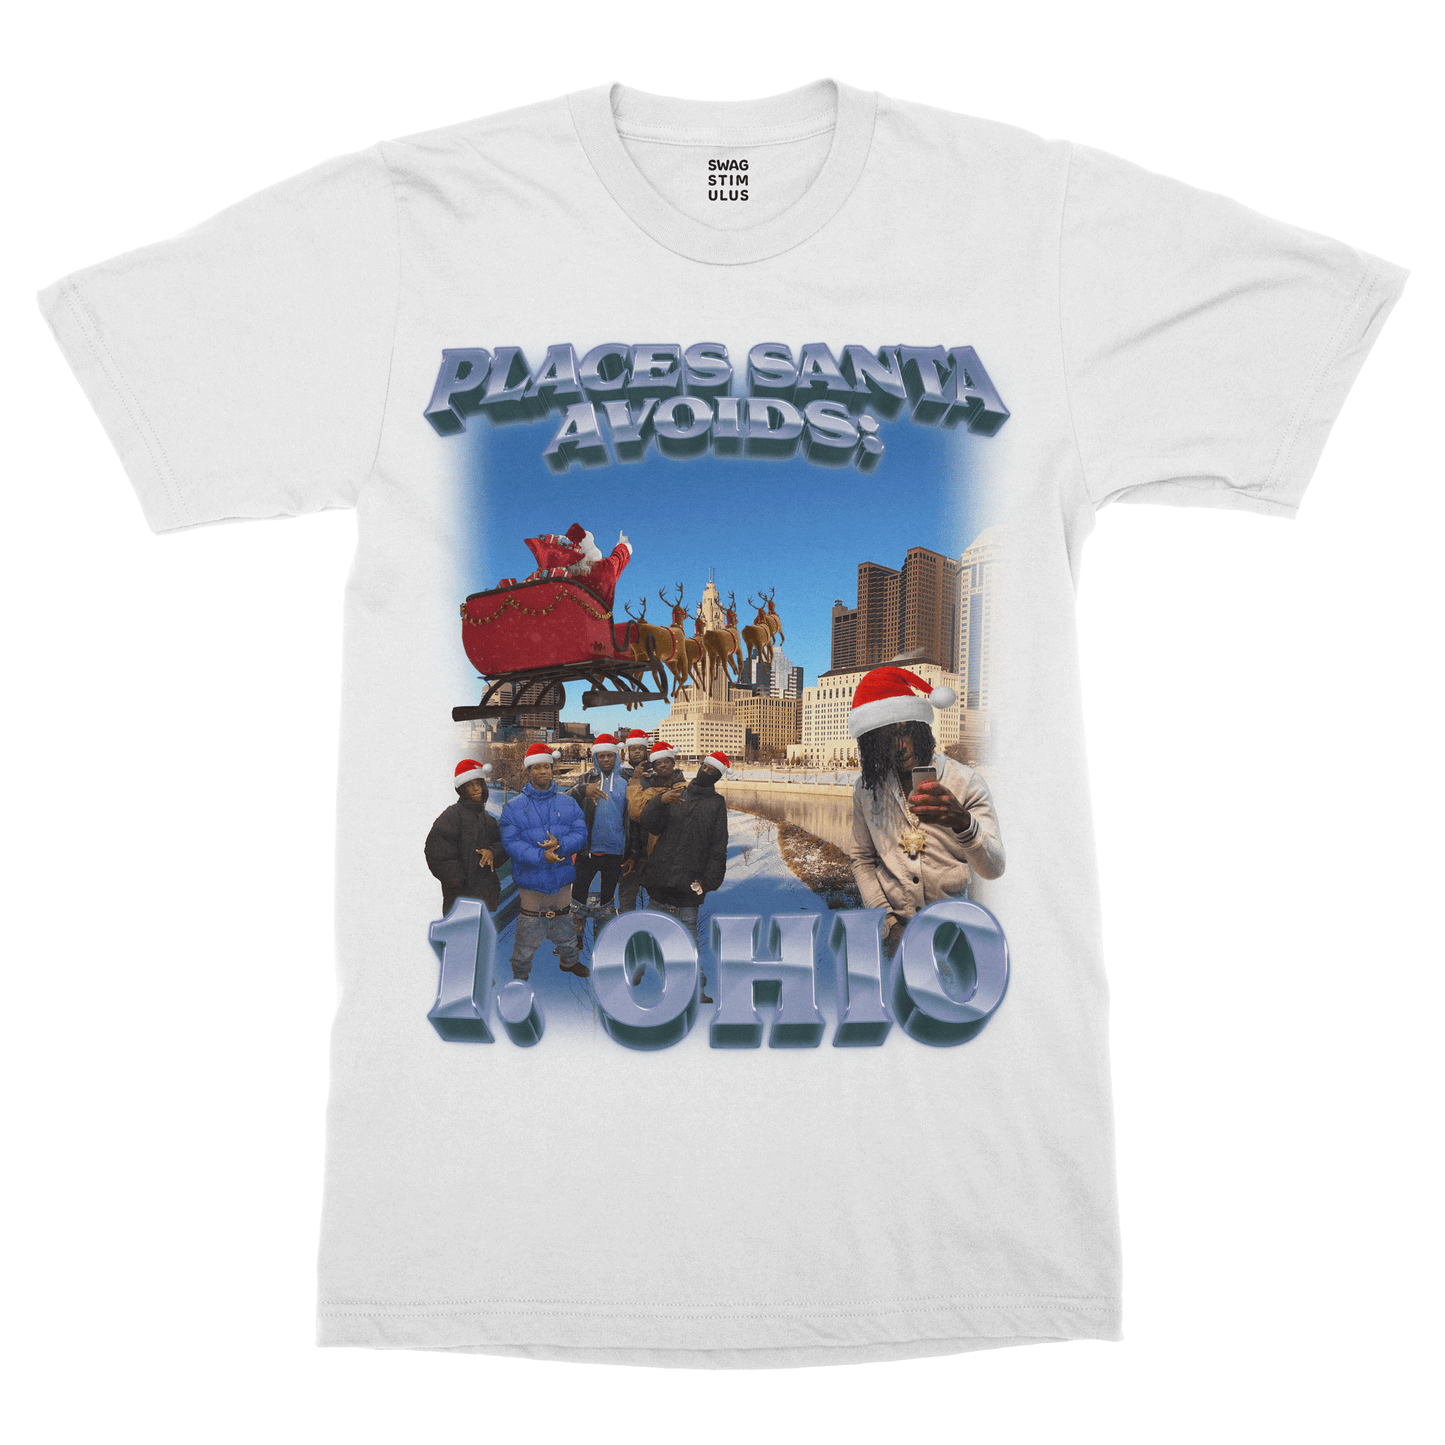 Santa Avoids Ohio T-Shirt